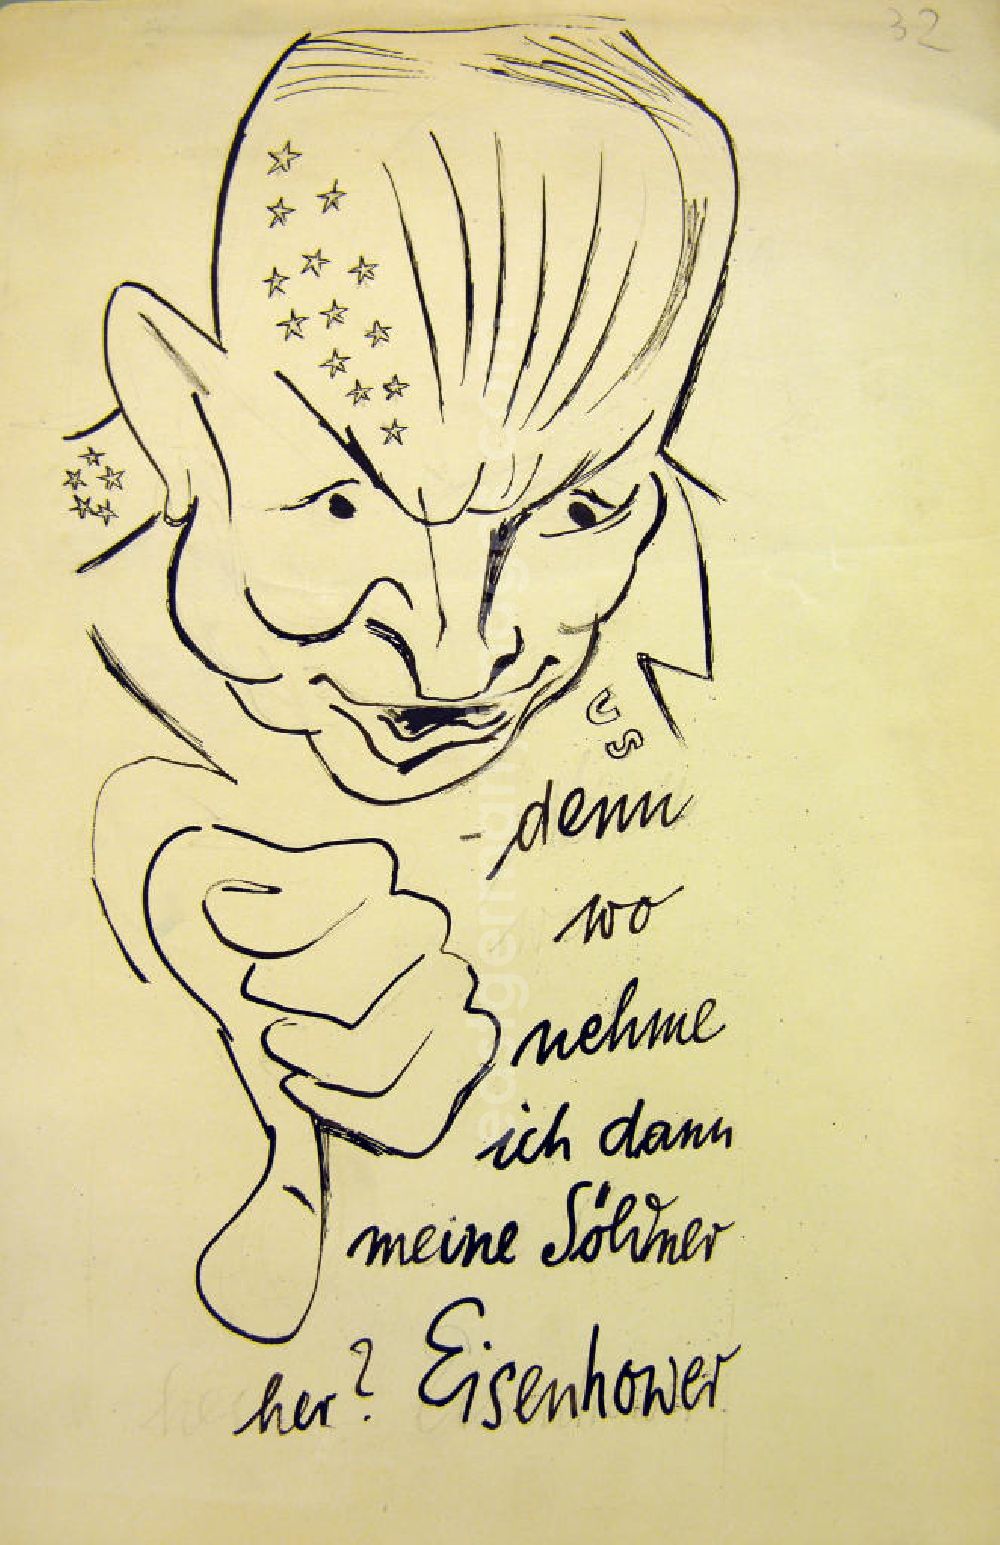 GDR image archive: Berlin - Zeichnung von Herbert Sandberg Eisenhower 17,0x34,